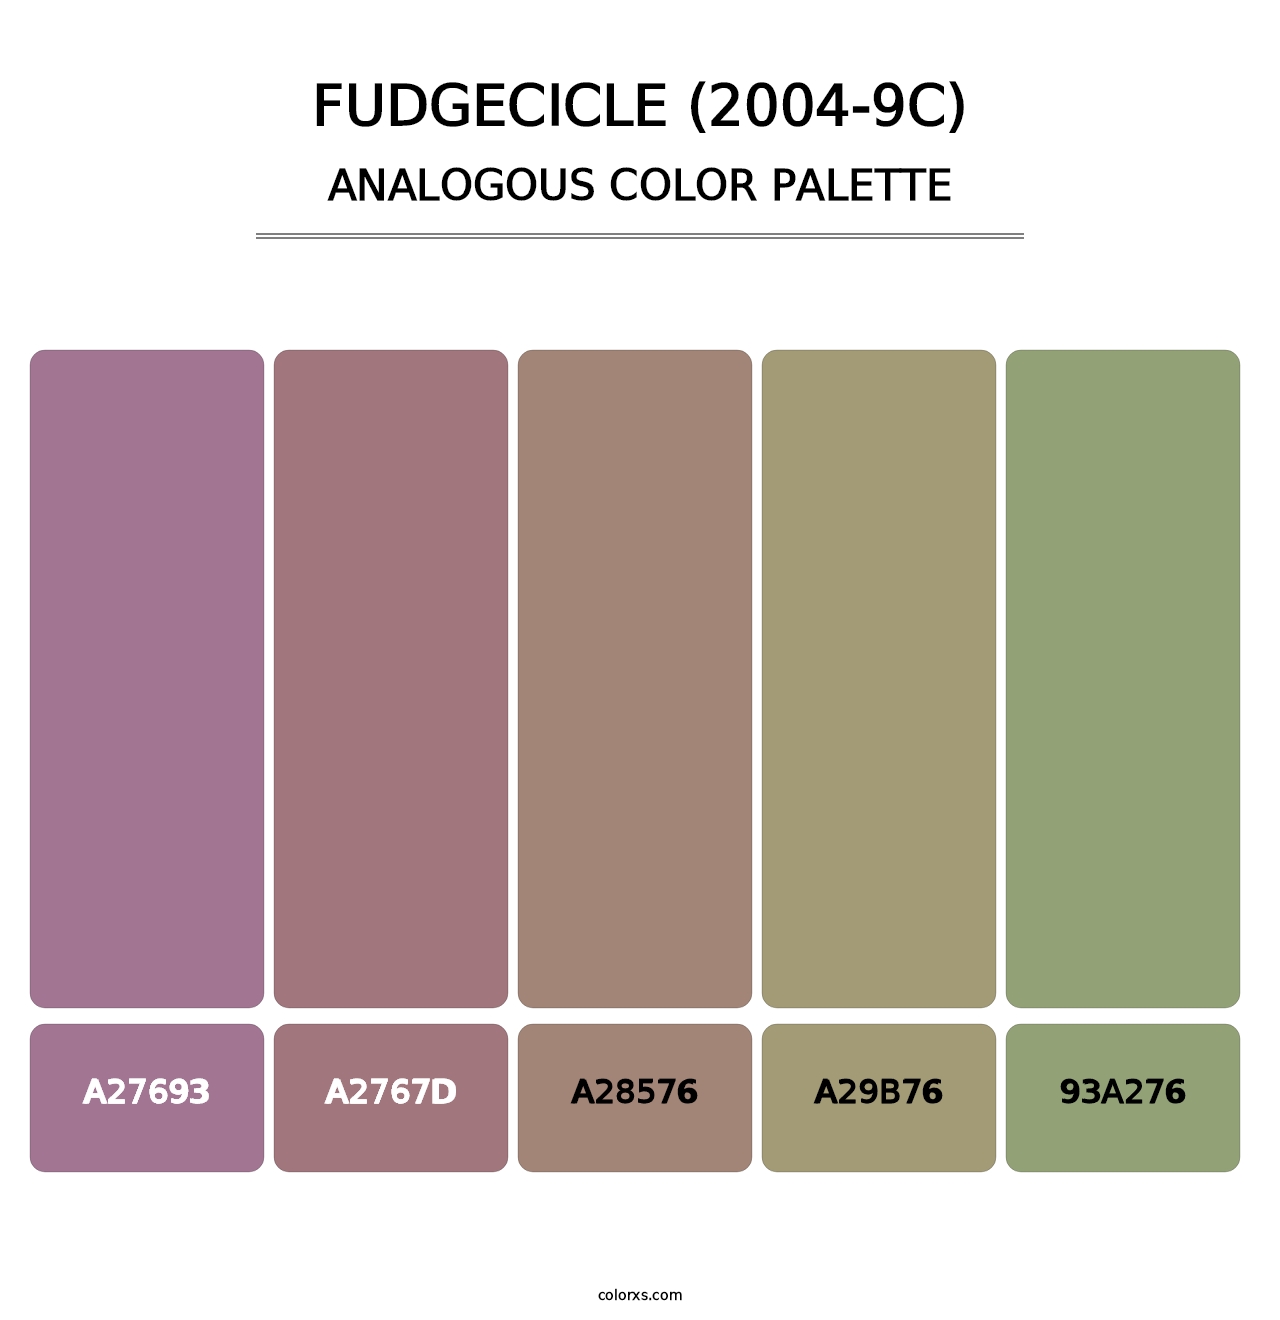 Fudgecicle (2004-9C) - Analogous Color Palette